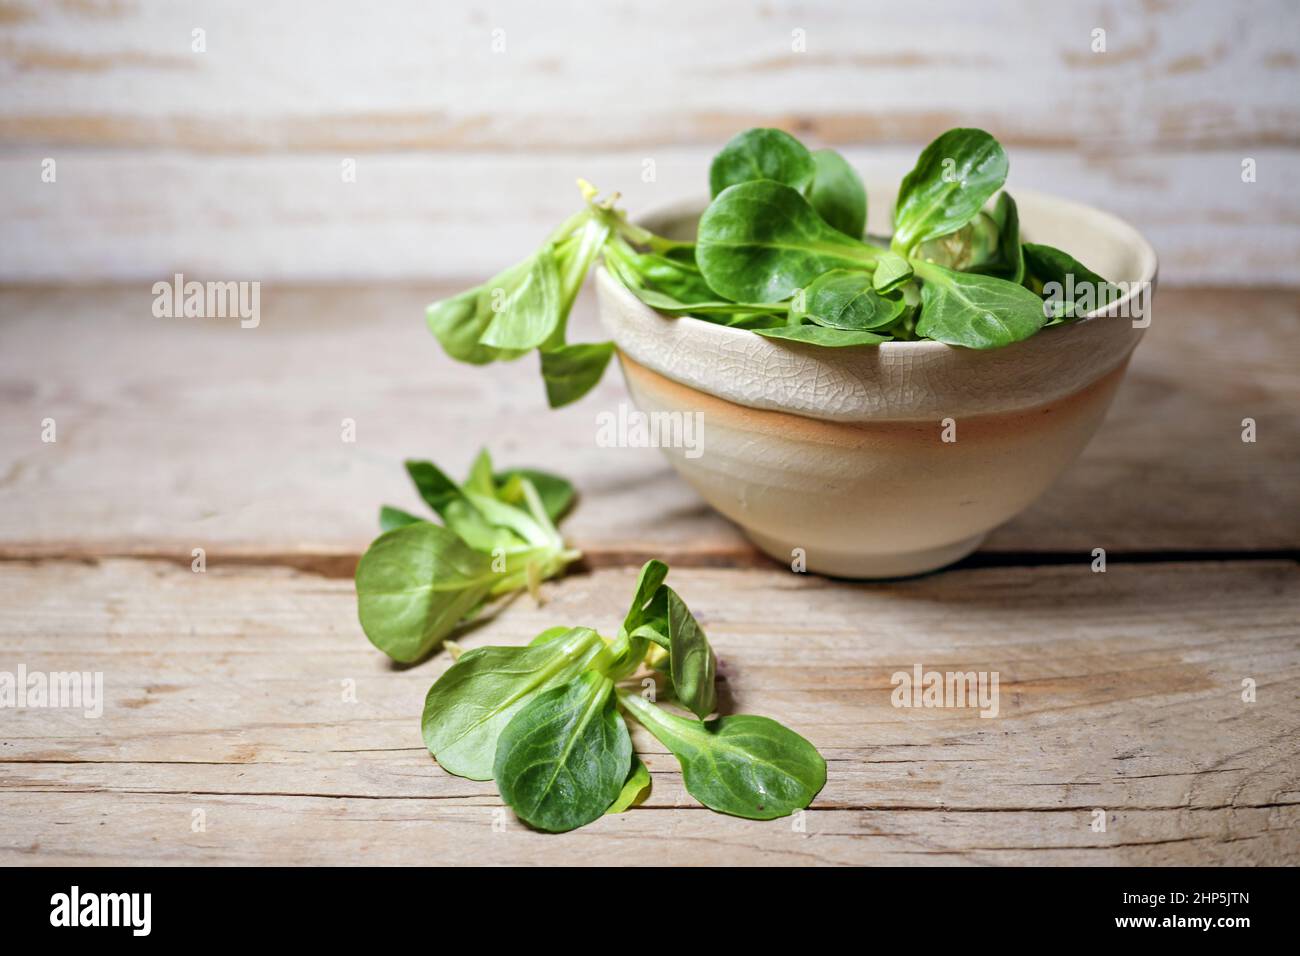 Salade de maïs biologique ou feuilles de laitue d'agneau dans un bol sur une table rustique en bois, espace de copie, foyer choisi, profondeur de champ étroite Banque D'Images